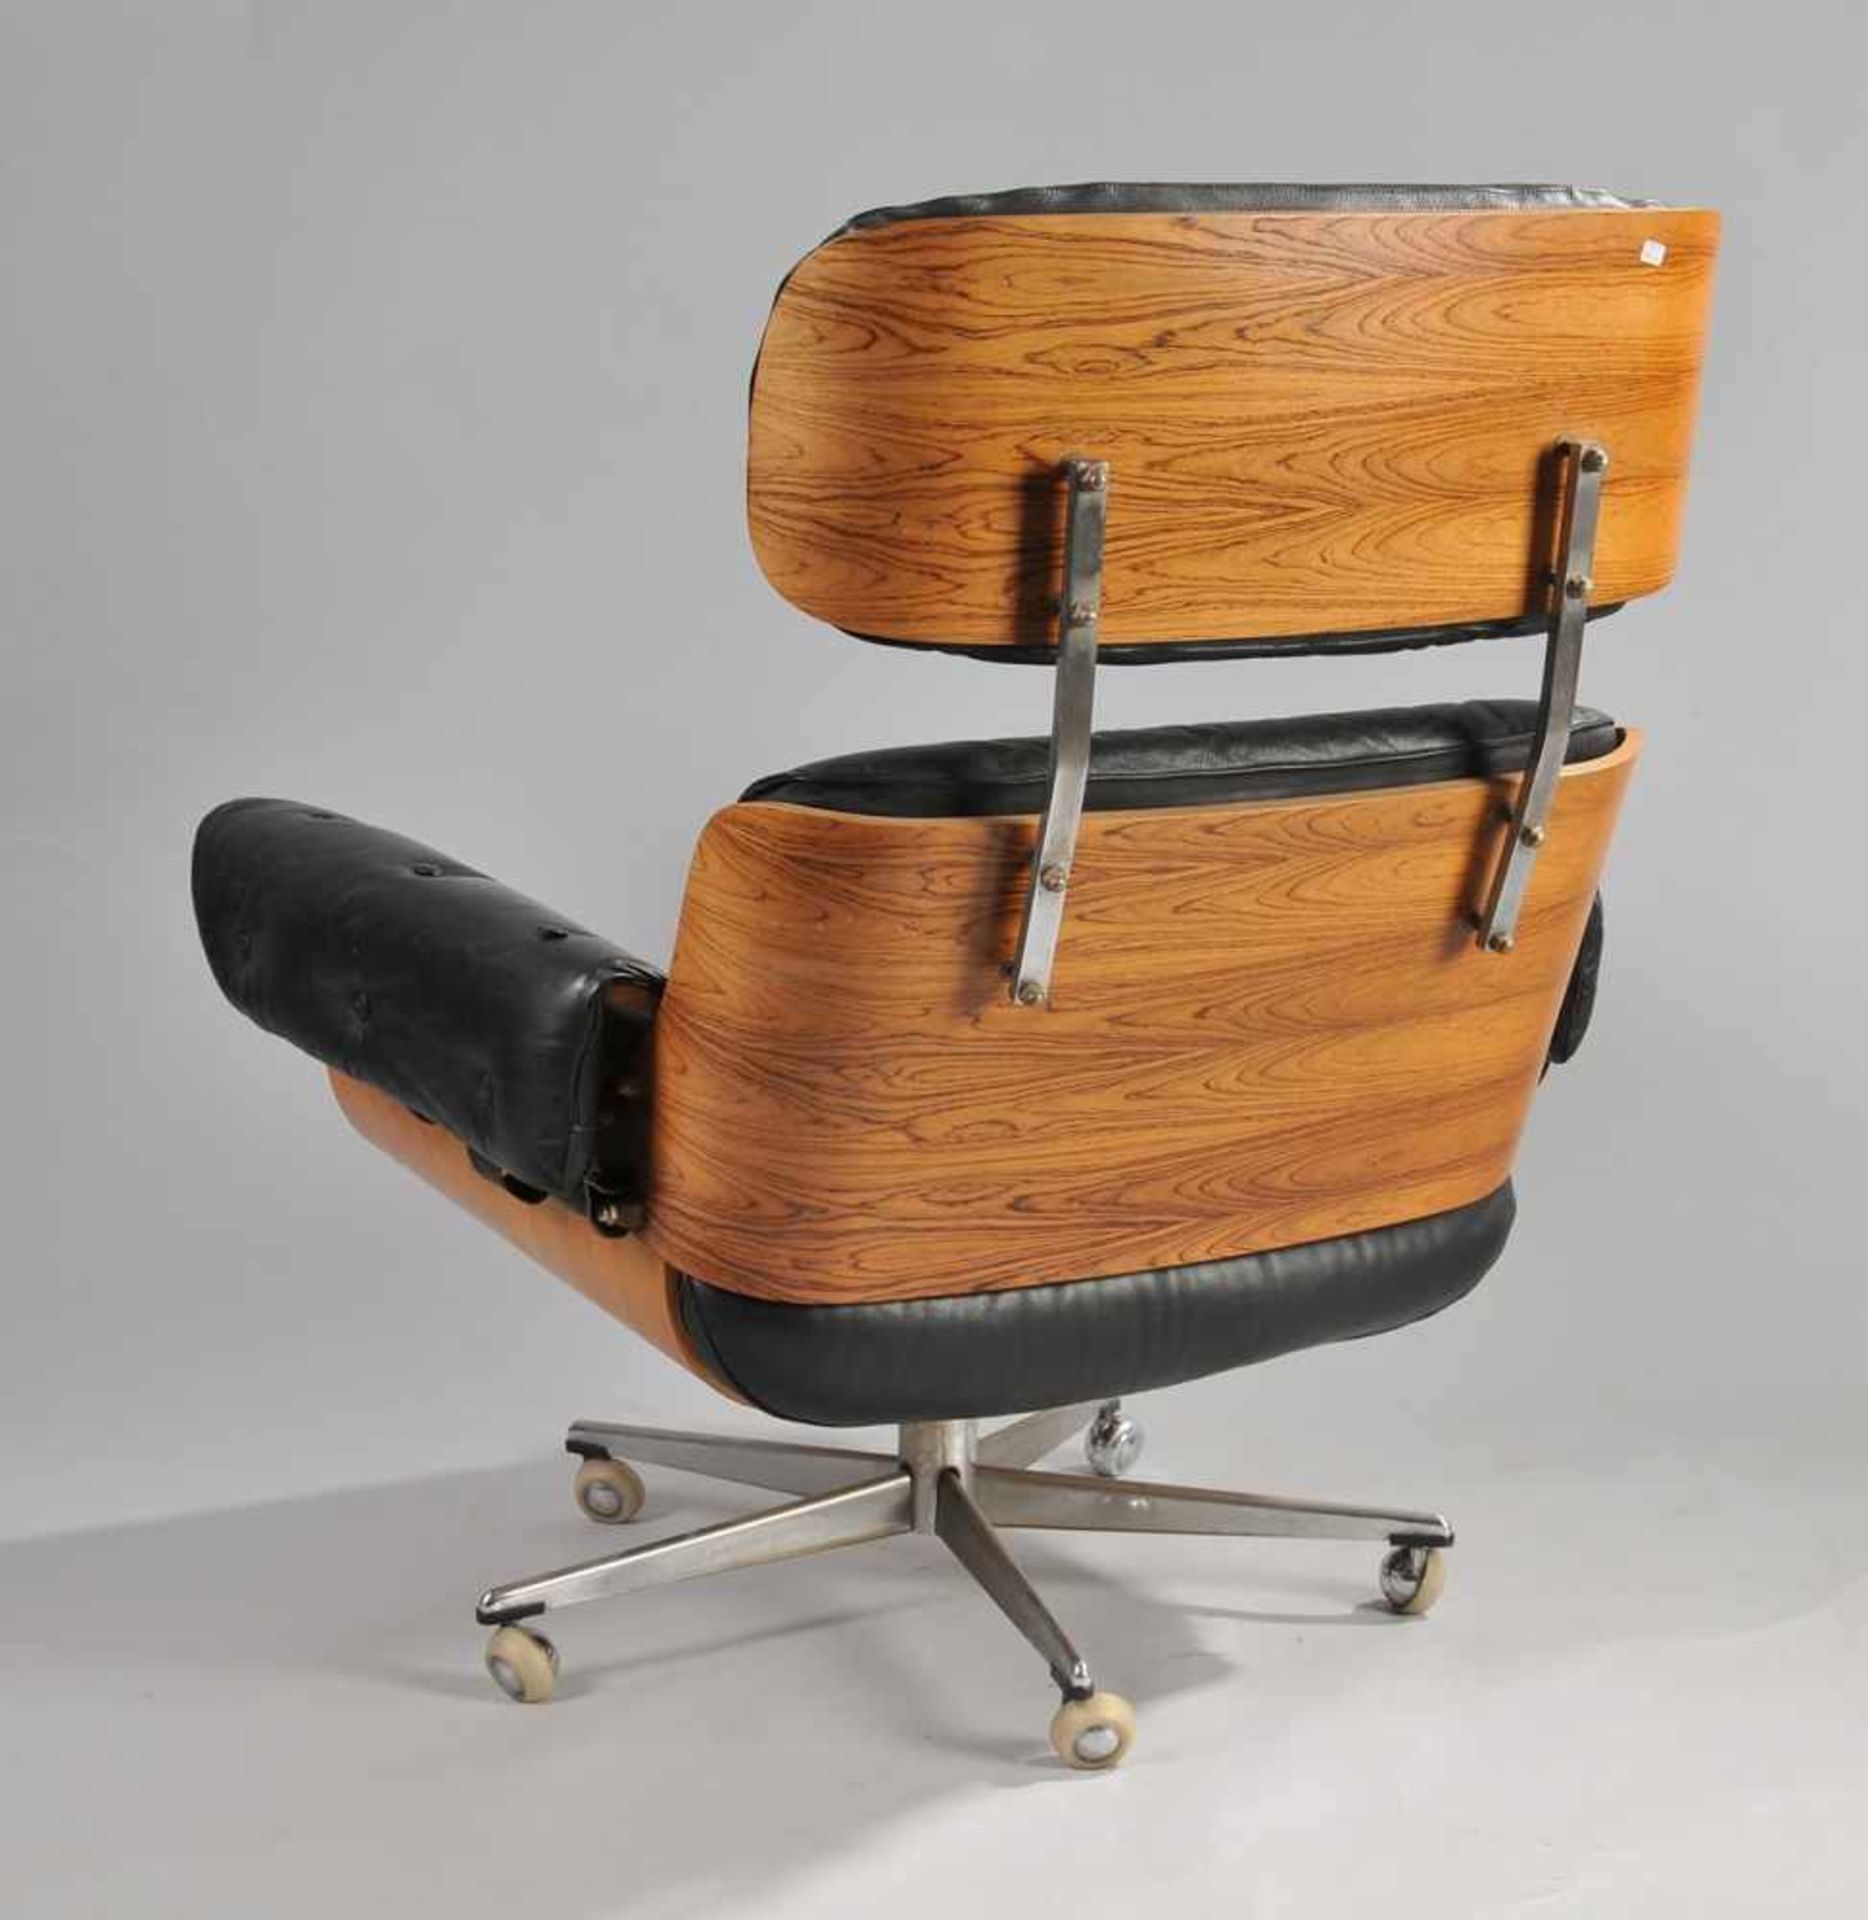 Lounge Chair und Ottomane, Entwurf Charles und Ray EamesPalisander, auf gebogenem Sperrholz - Bild 5 aus 8